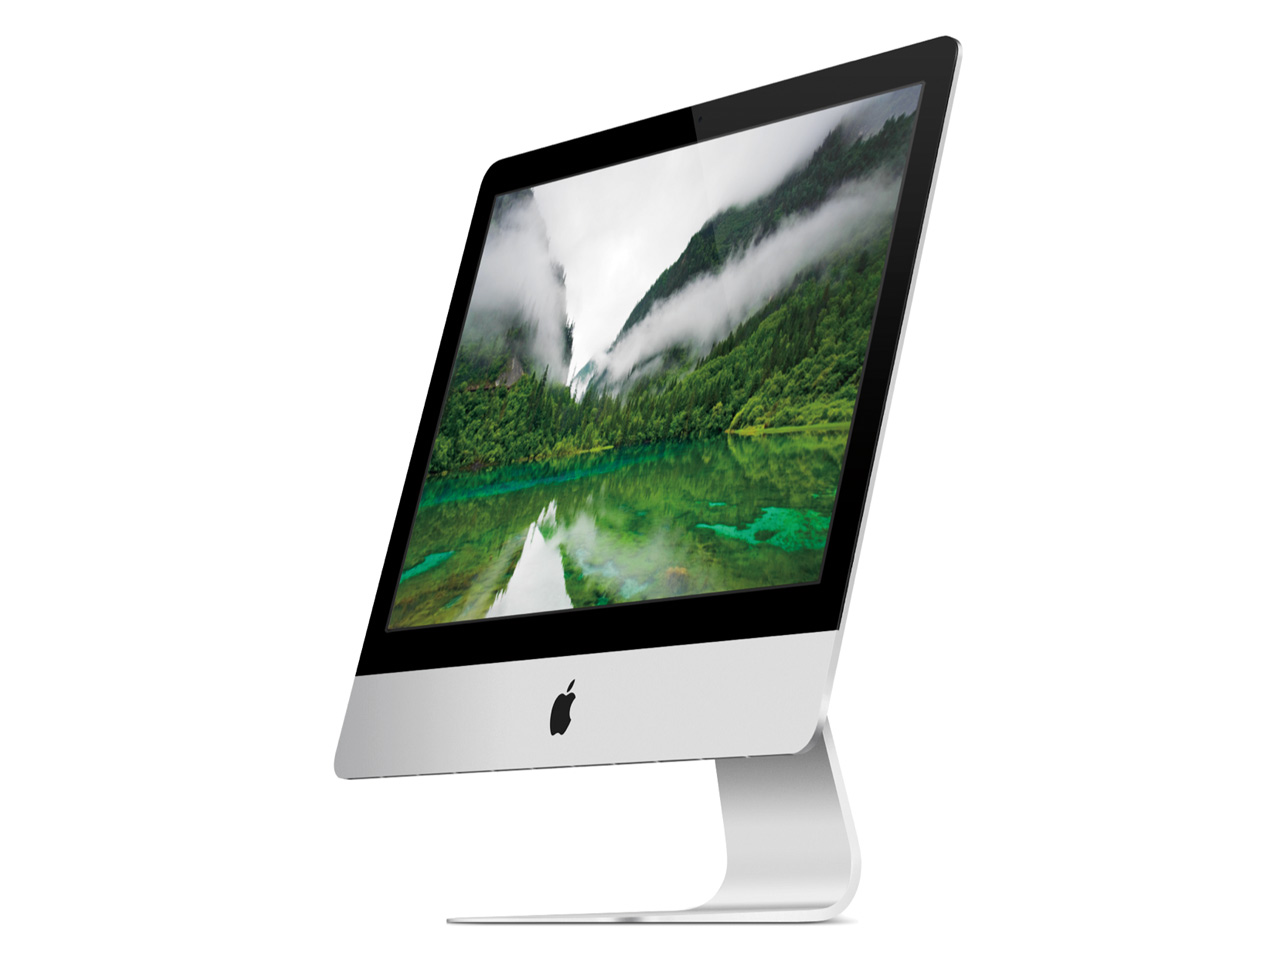 【中古】Apple iMac 21.5インチ カスタマイズモデル ME086J/A(16GB) Late  2013[30日間保証]｜パソコン・スマートフォン・デジタル機器販売のPC DEPOT(ピーシーデポ)WEBSHOP